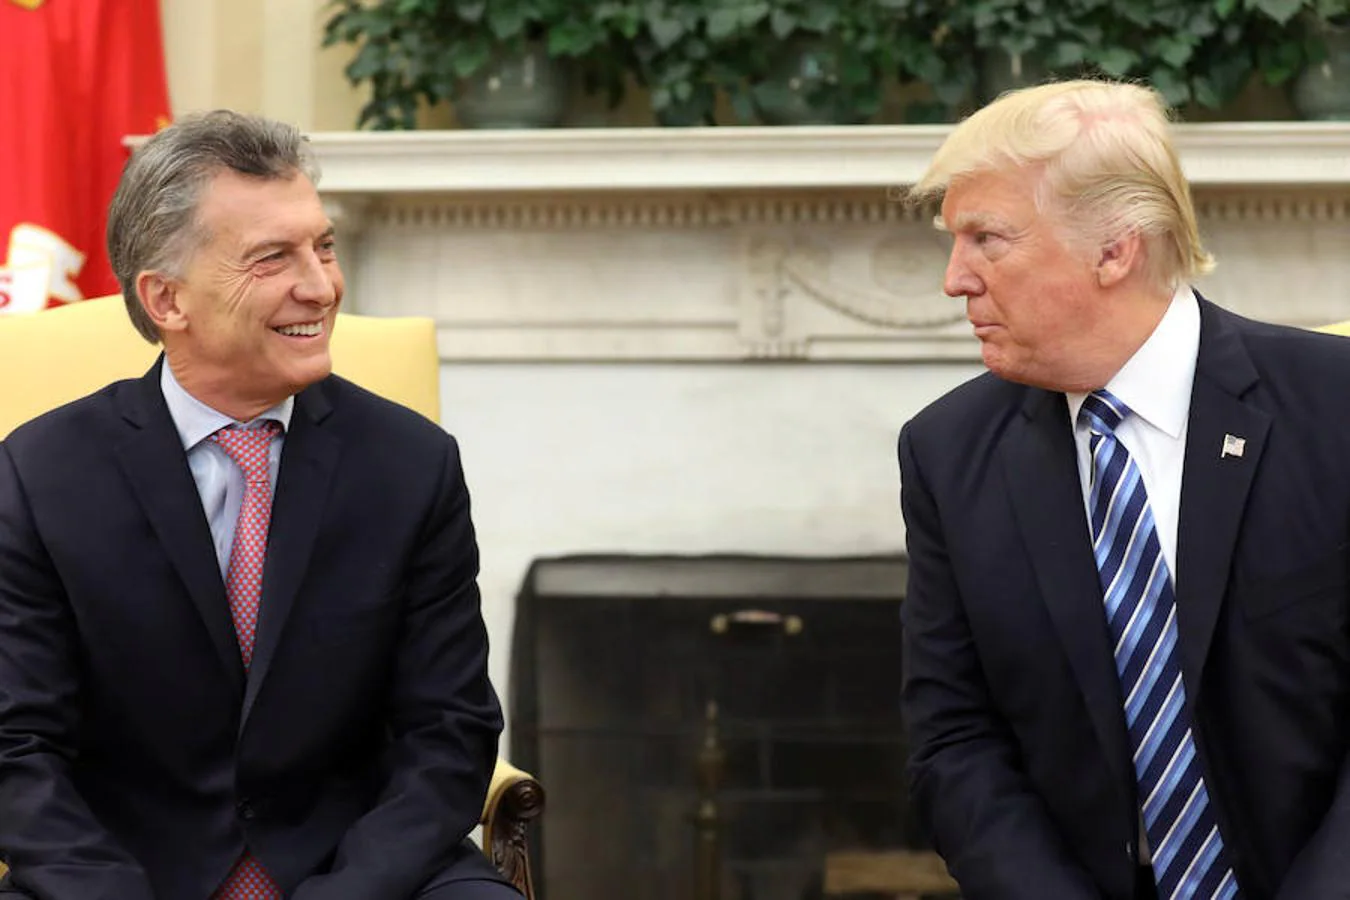 El presidente de los Estados Unidos Donald Trump y el presidente de la República Argentina Mauricio Macri se reúnen en Despacho Oval de la Casa Blanca en Washington, Estados Unidos